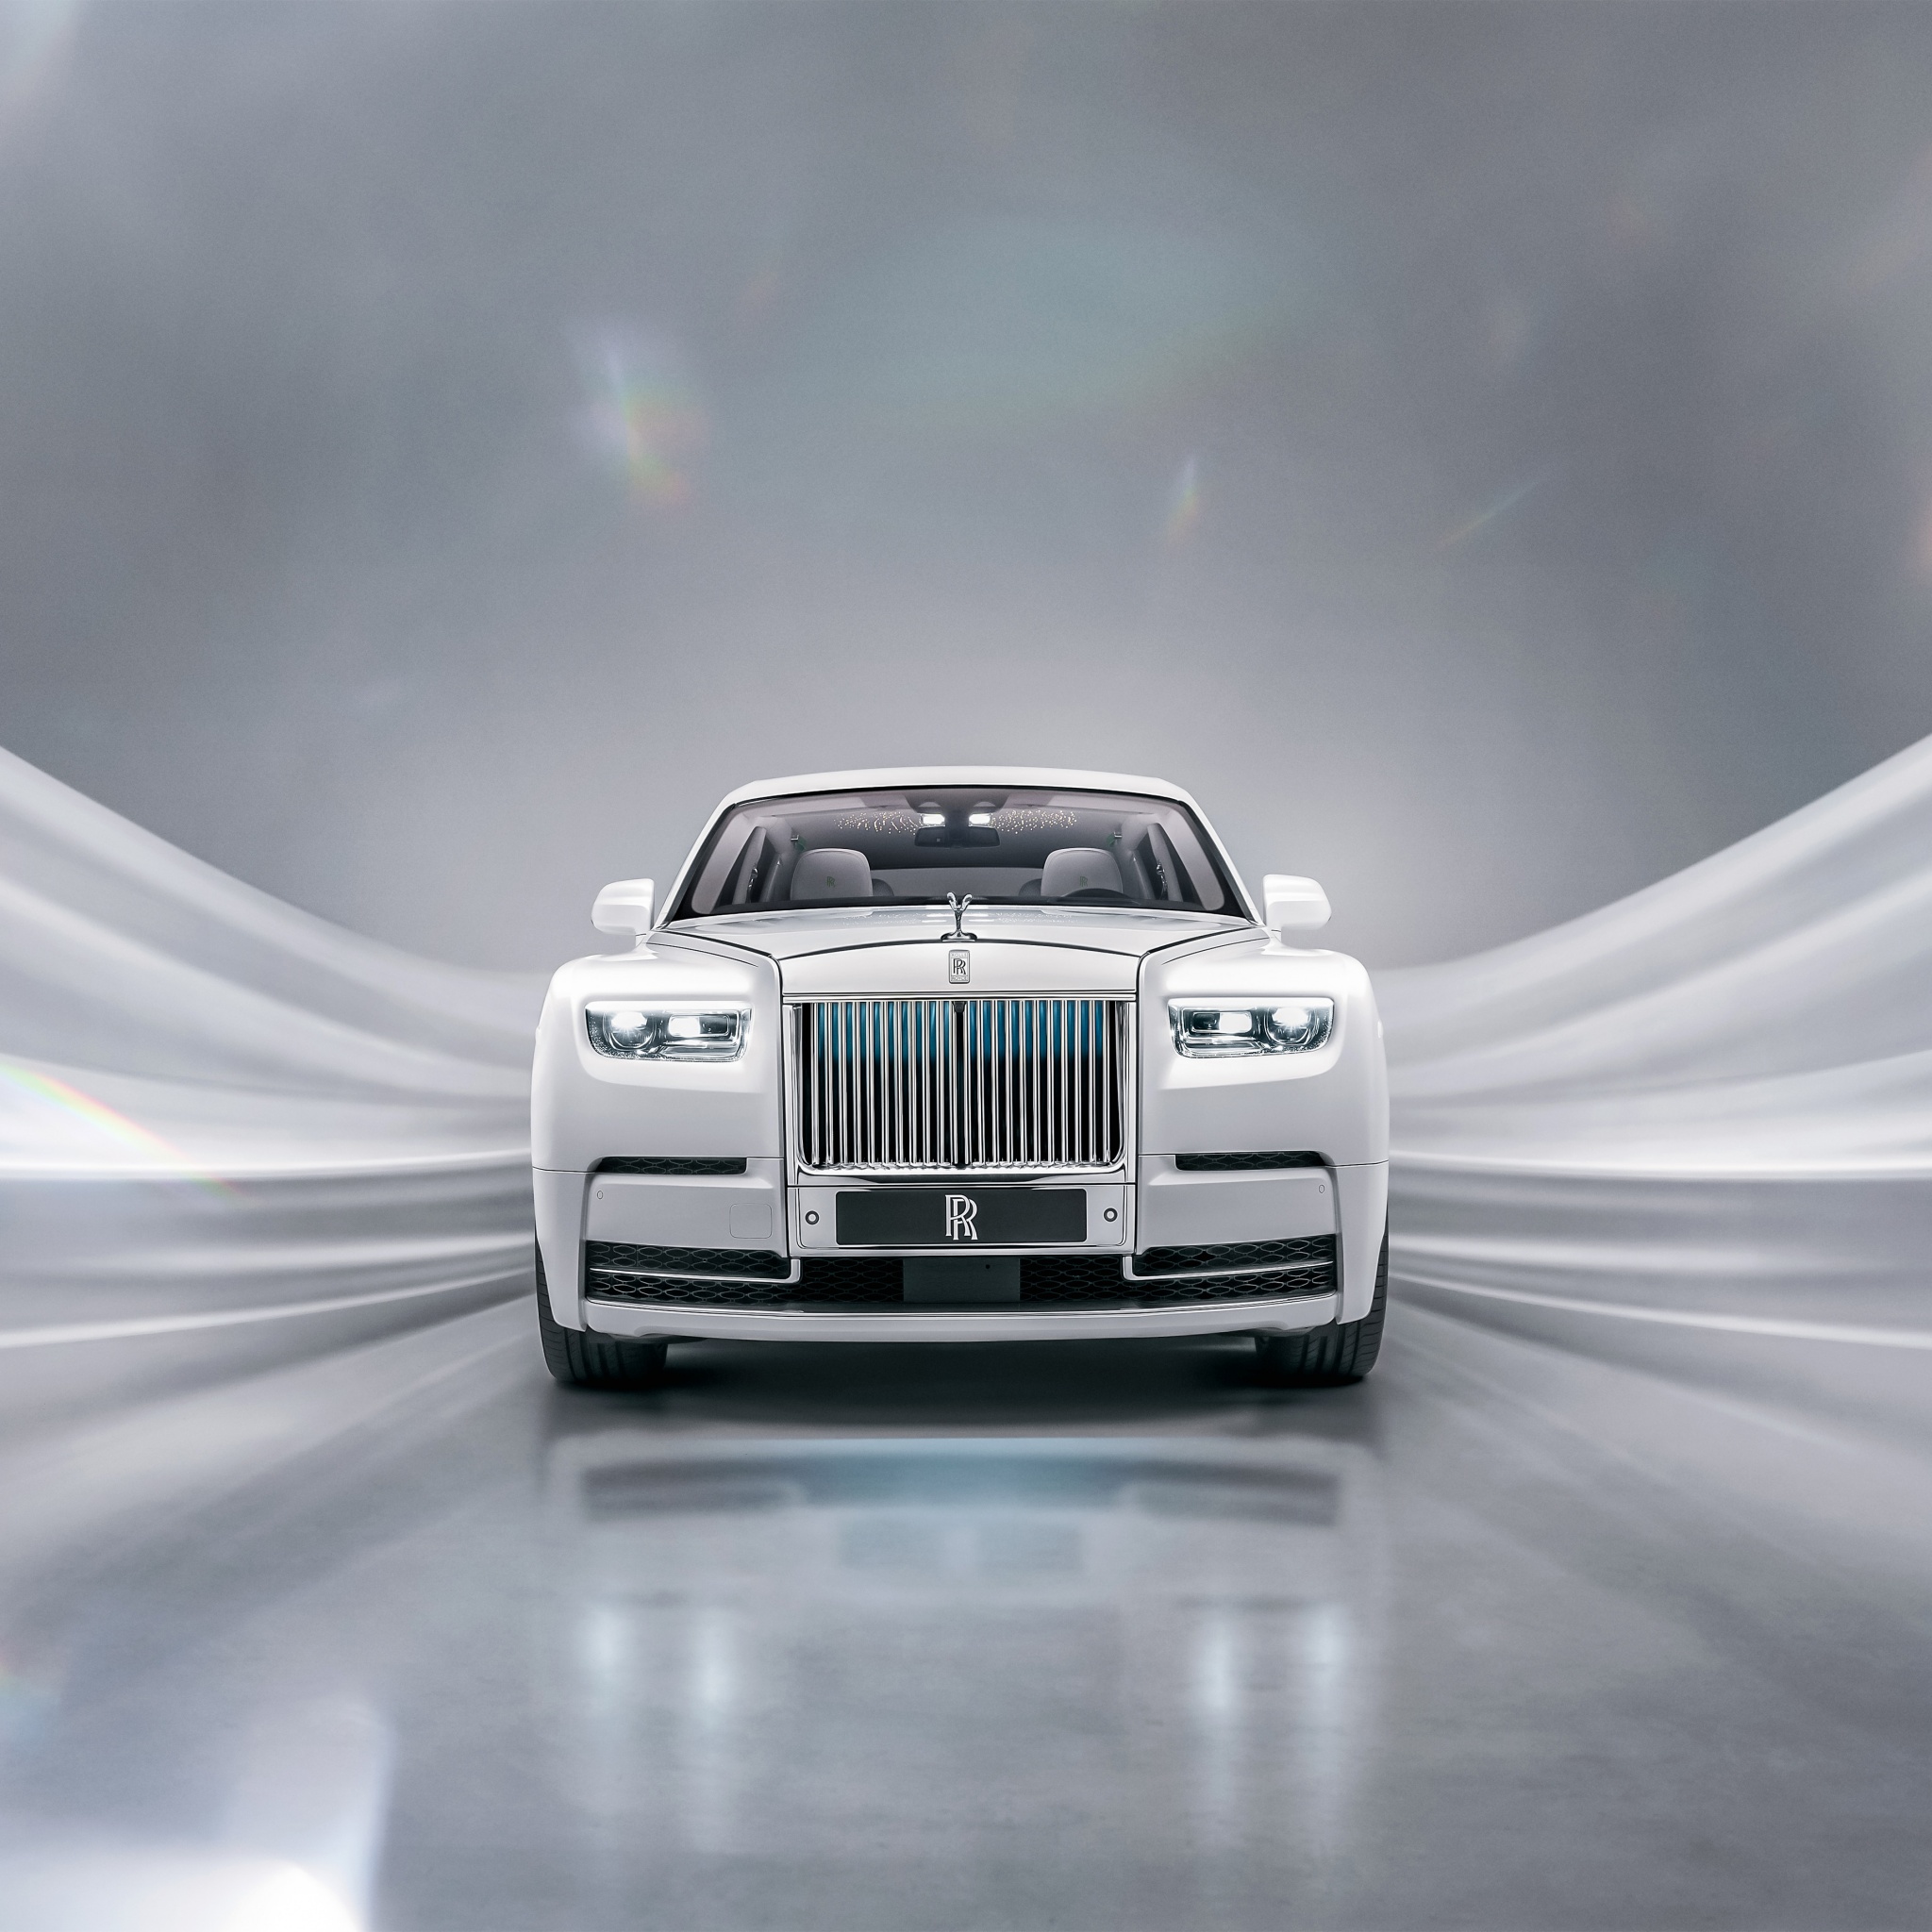 Rolls-Royce Phantom EWB: Hãy chào đón một trong những chiếc xe sang trọng nhất của Rolls-Royce - Phantom EWB. Đây là sự kết hợp hoàn hảo giữa sự tinh tế và công nghệ tiên tiến. Điều khiến Phantom EWB trở nên đặc biệt là khoang xe rộng rãi với các tính năng thời thượng nhất bên trong. Nhấn chuột vào ảnh để khám phá thêm về Rolls-Royce Phantom EWB.